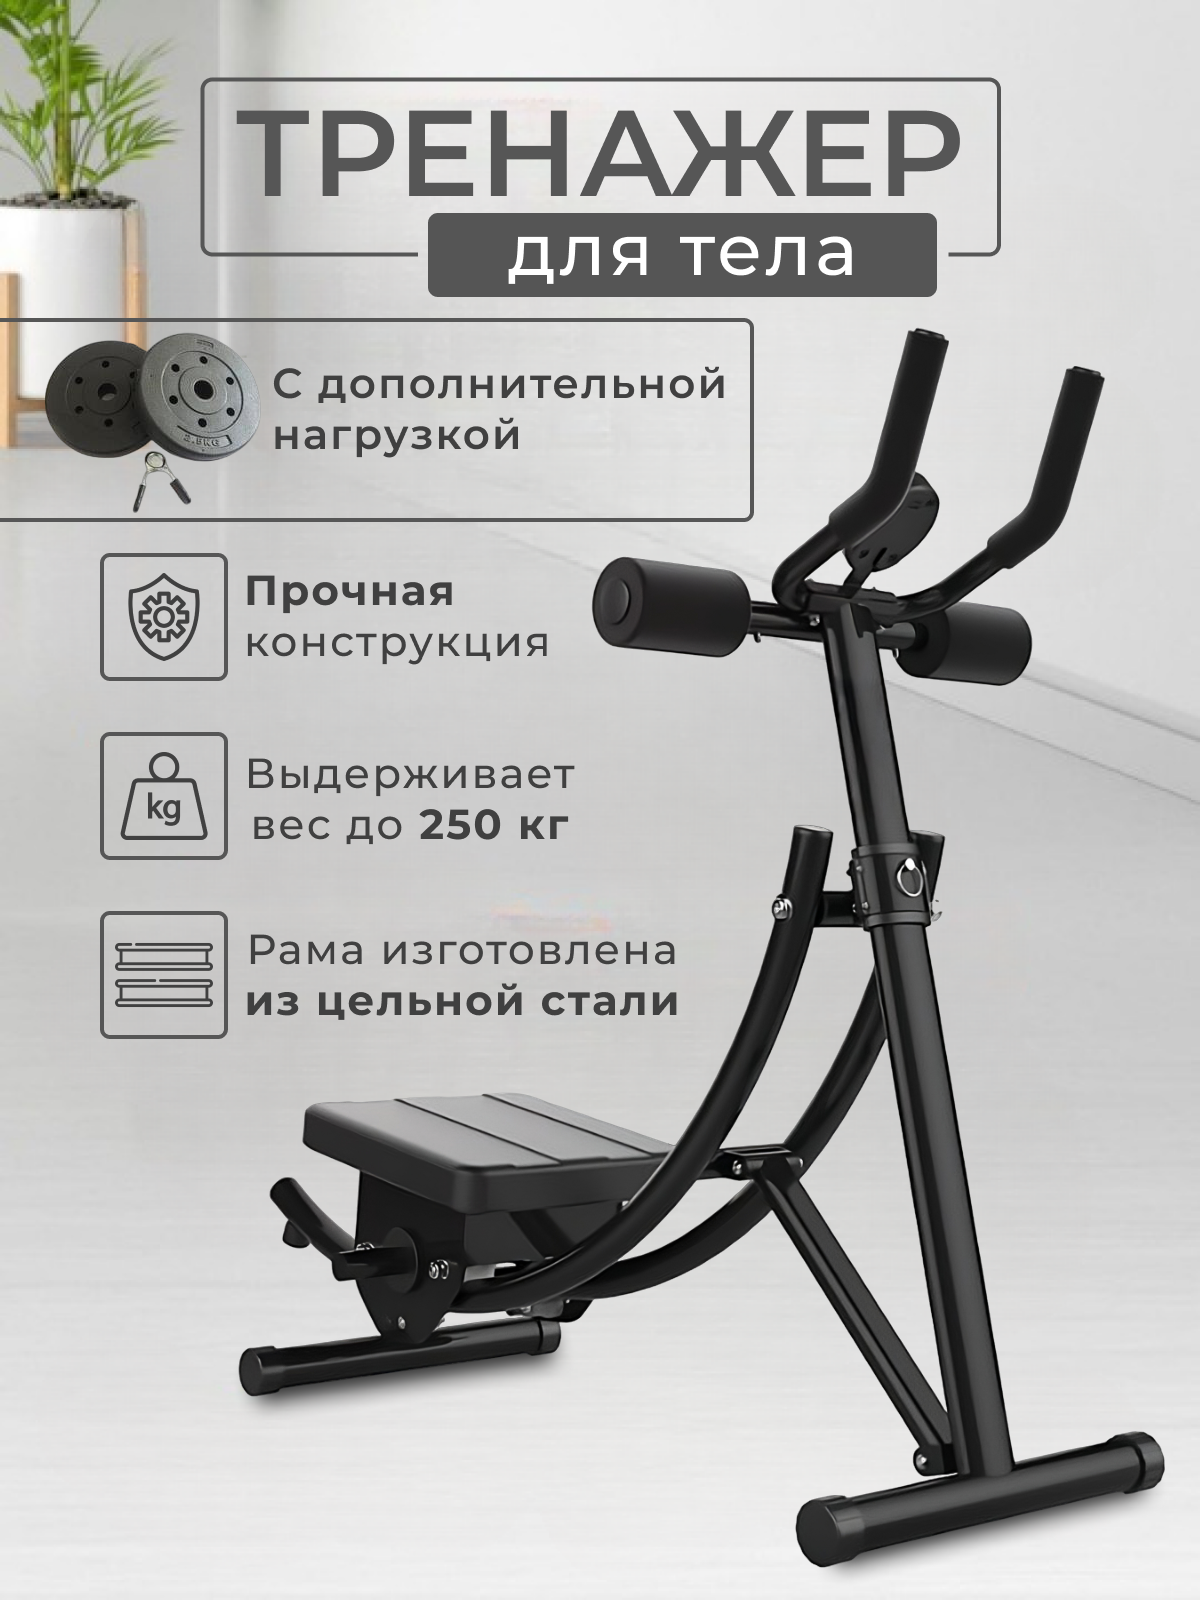 Тренажер для пресса, мышц живота, складной с двумя утяжелителями. Оборудование для тренировок.